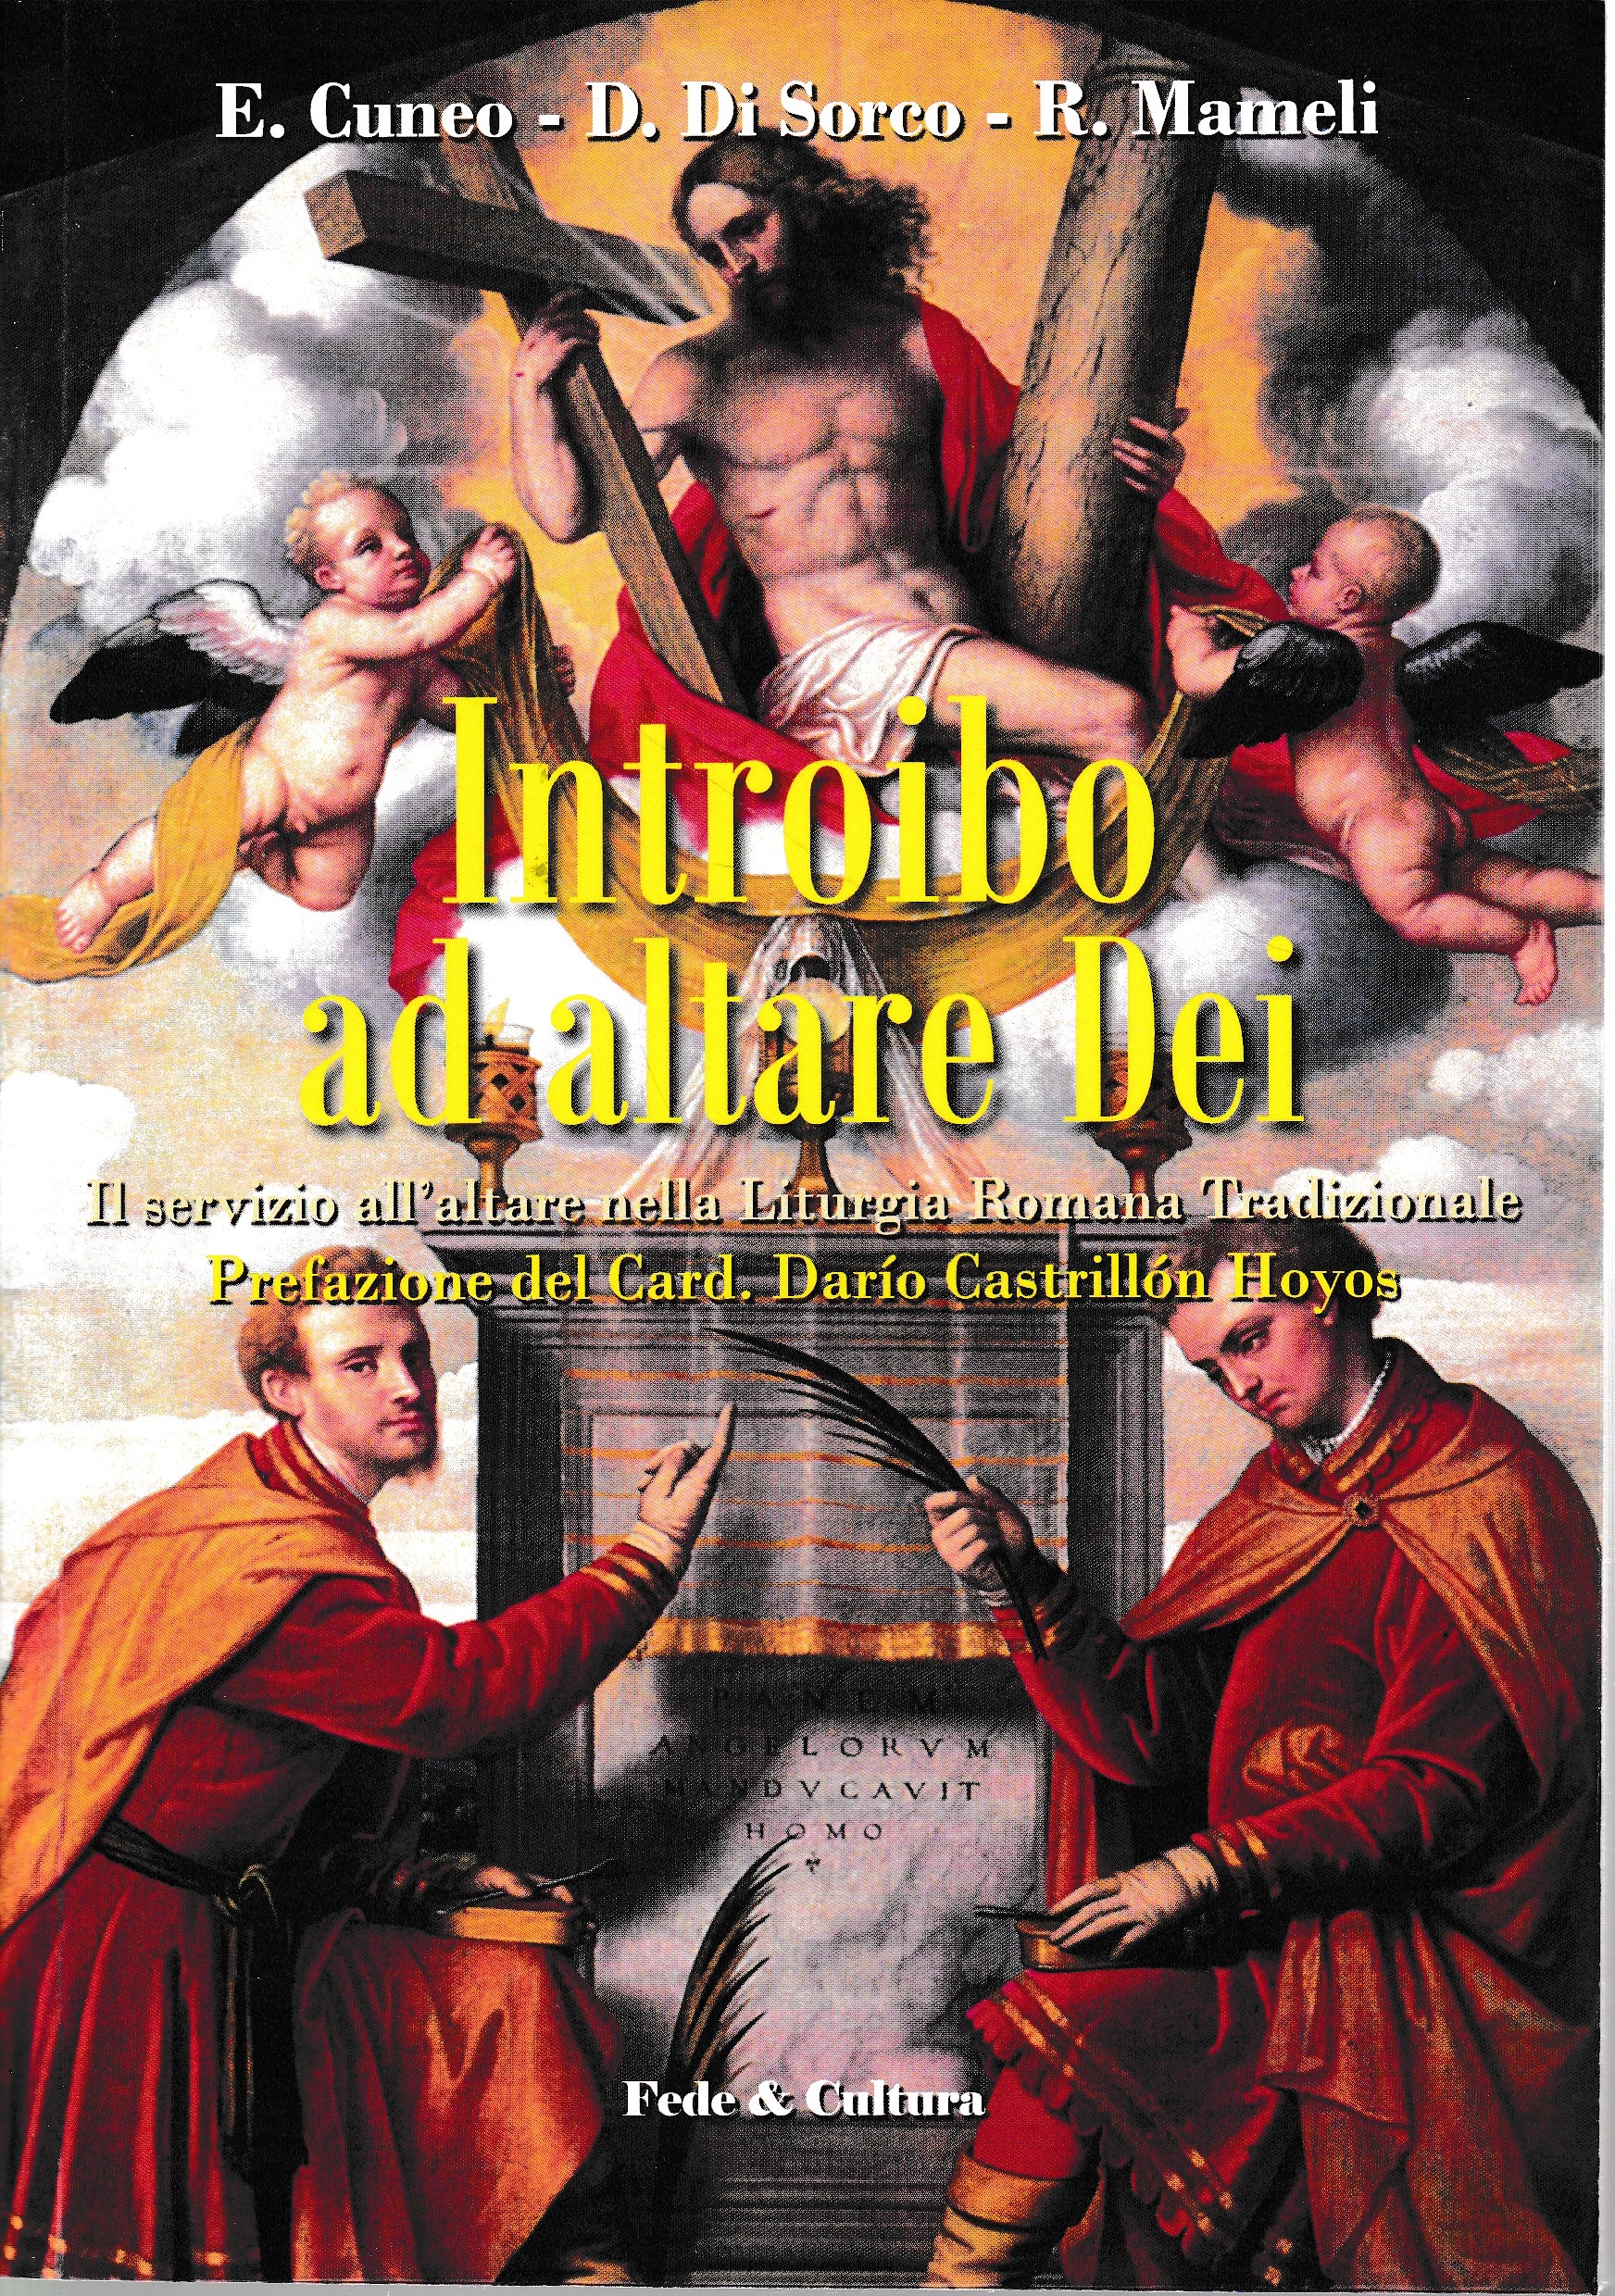 Introibo ad altare Dei. Il servizio all'altare nella Liturgia Romana tradizionale - E. Cuneo, D. Di Sorco, R. Mameli